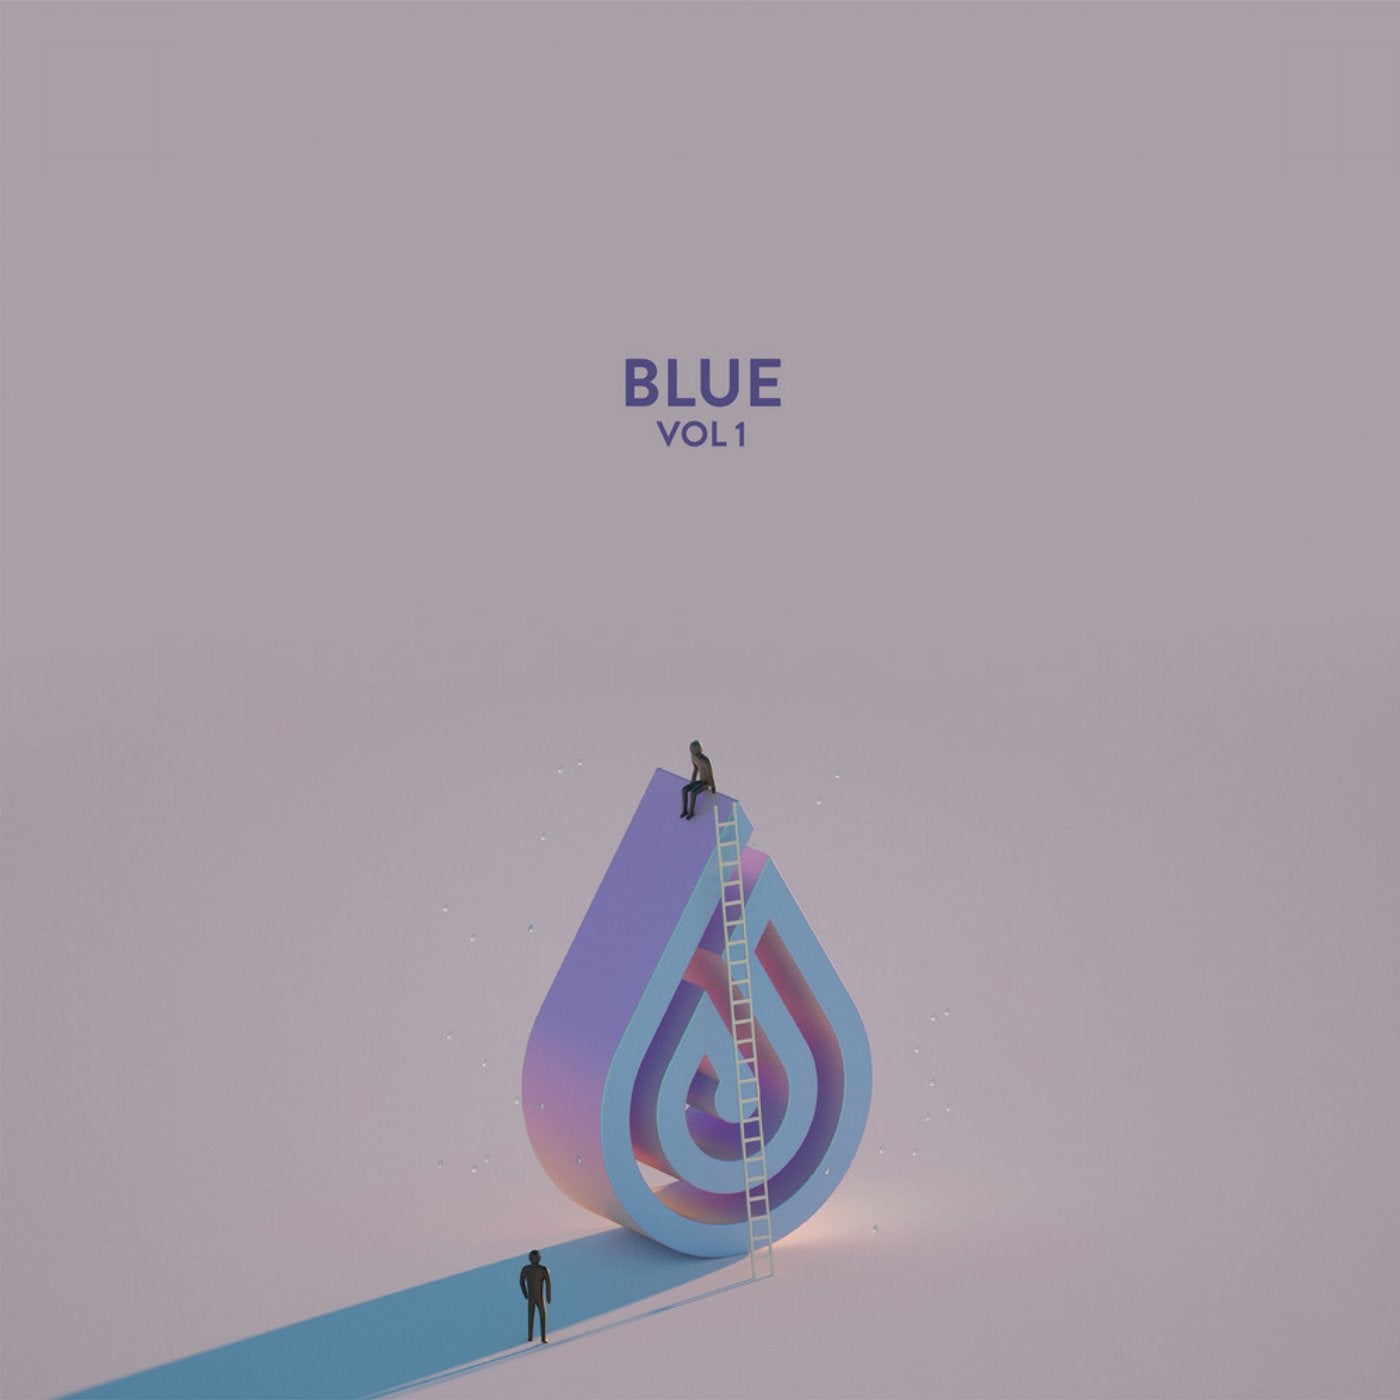 BLUE, Vol. 1